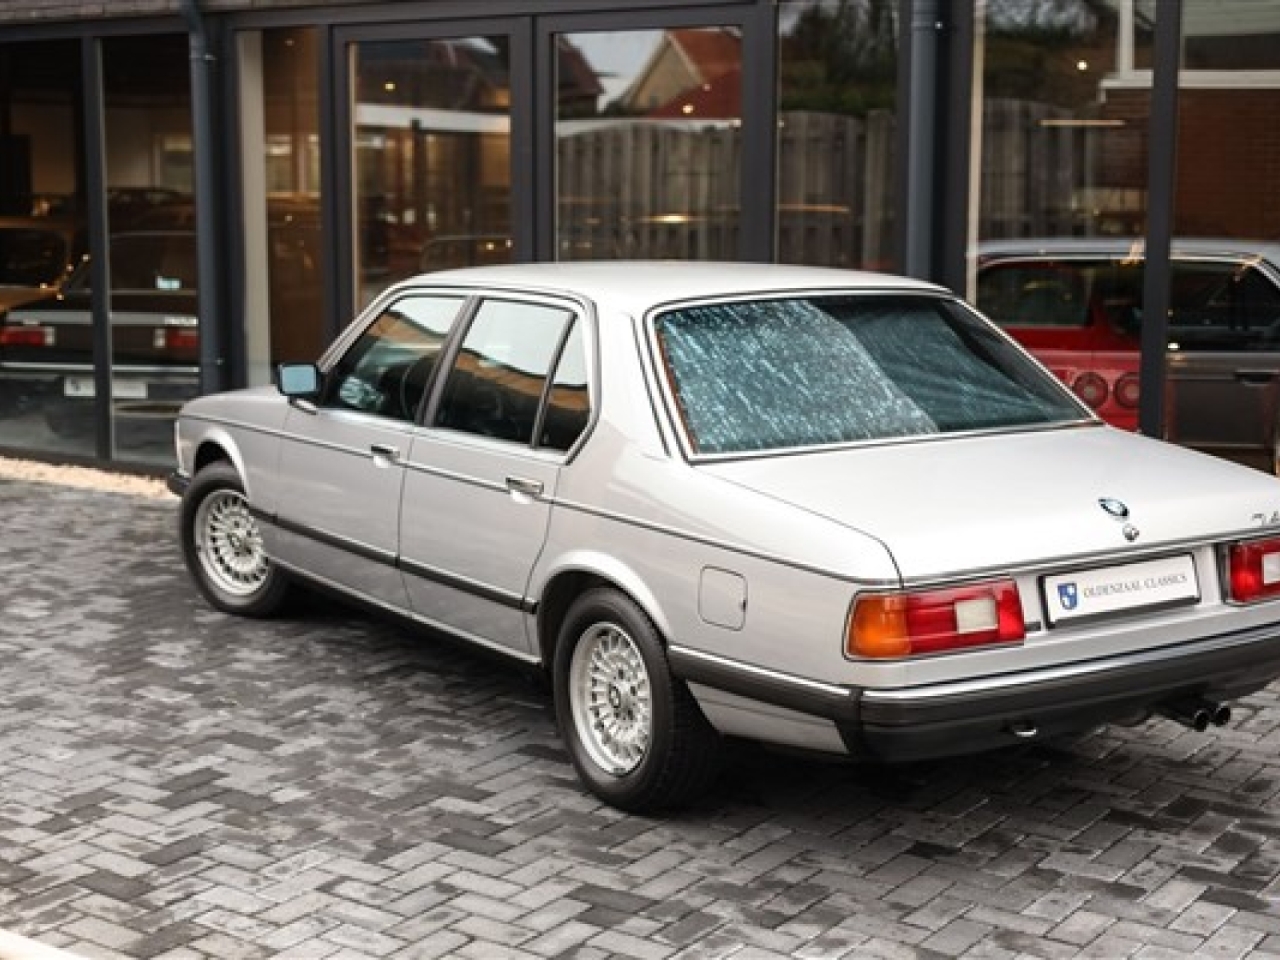 1986 BMW 745i